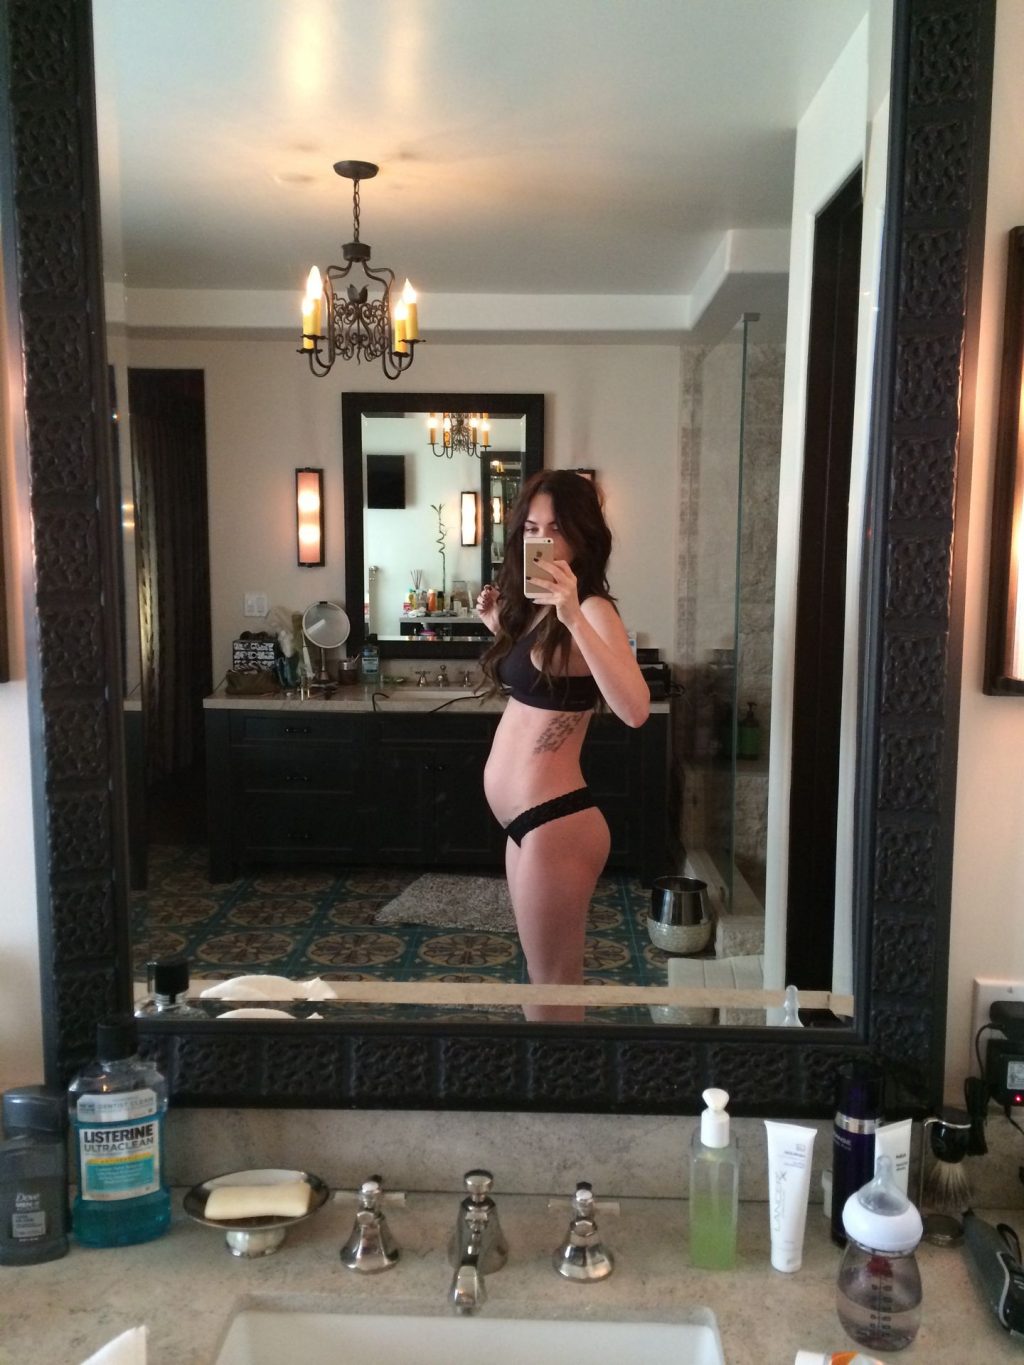 Megan Fox â€“ Personal pics